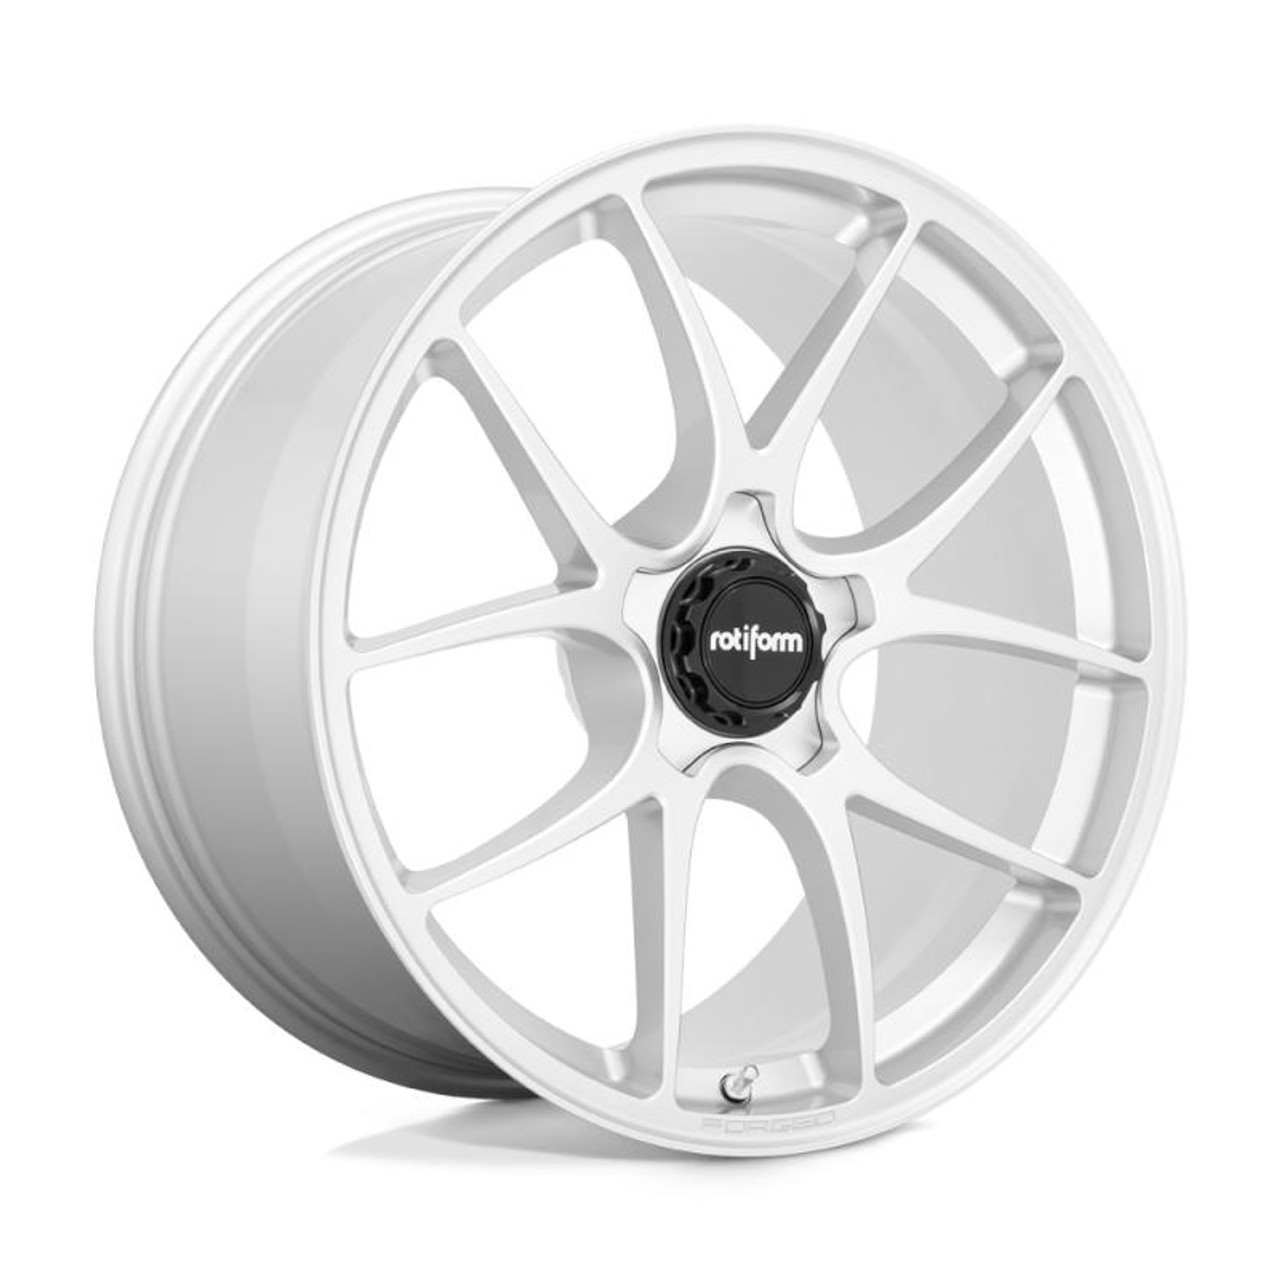  Rotiform R900 LTN Wheel 19x9.5 5x112 22 Offset - Gloss Silver - R9001995F8+22T 